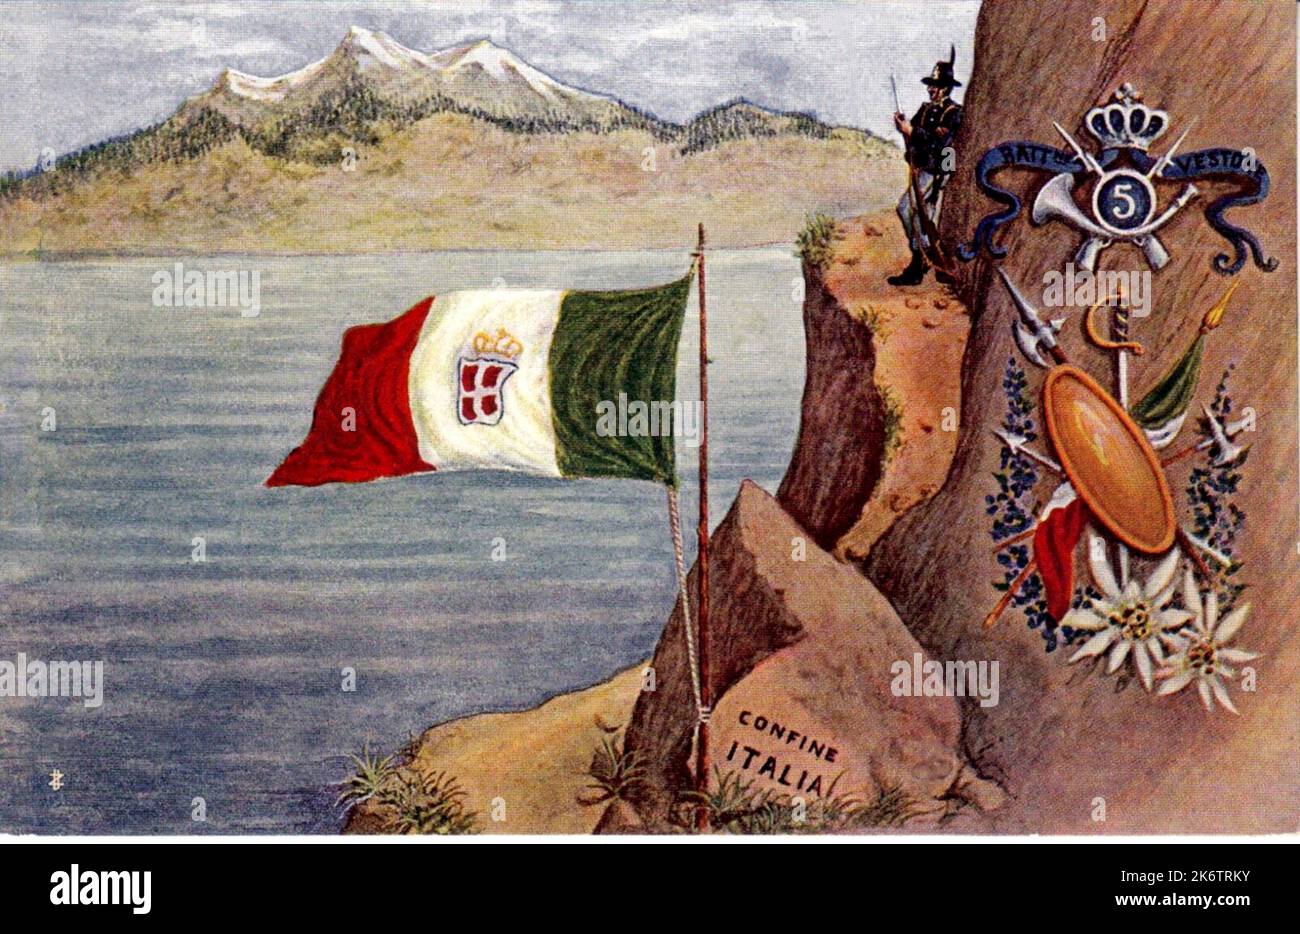 1910 Ca , ITALIEN : Eine Postkarte mit einem italienischen Militär ALPINO Trompeter Soldat von 5 REGGIMENTO ALPINI , BATTAGLIONI VESTONE und den italienischen Grenzen . Kunstwerk eines unbekannten Künstlers. - ALPINO - ALPINE - CARTOLINA POSTALE - miliari soldati italiani - GESCHICHTE - FOTO STORICHE - PROPAGANDA - ILLUSTRATION - beschränken italiano --- Archivio GBB Stockfoto